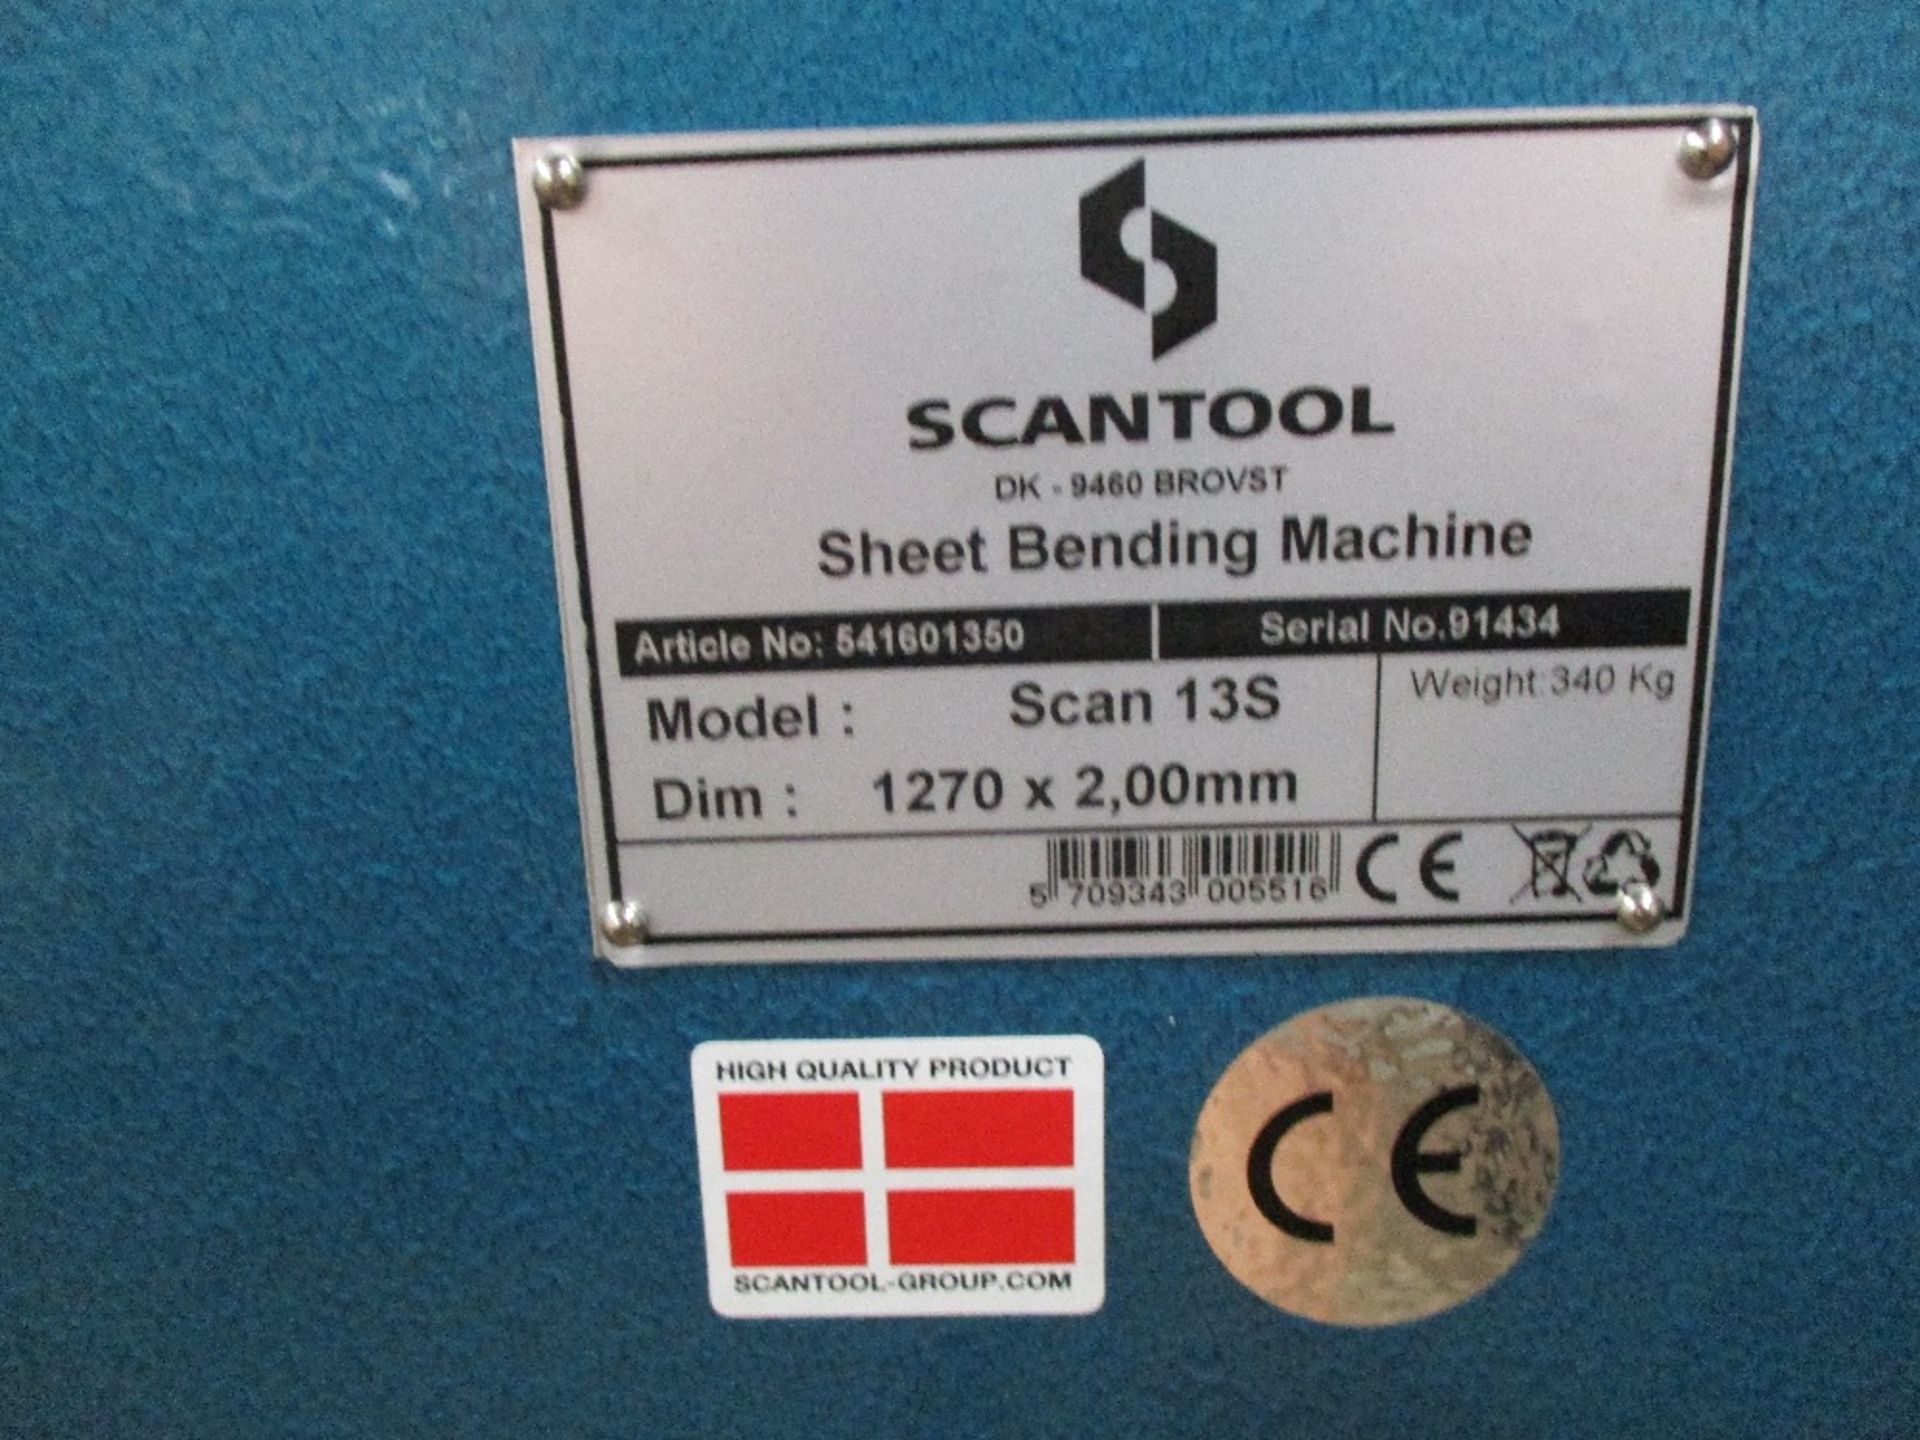 SCANTOOL SCAN135 SHEET BENDING MACHINE FOLDER - Image 2 of 3